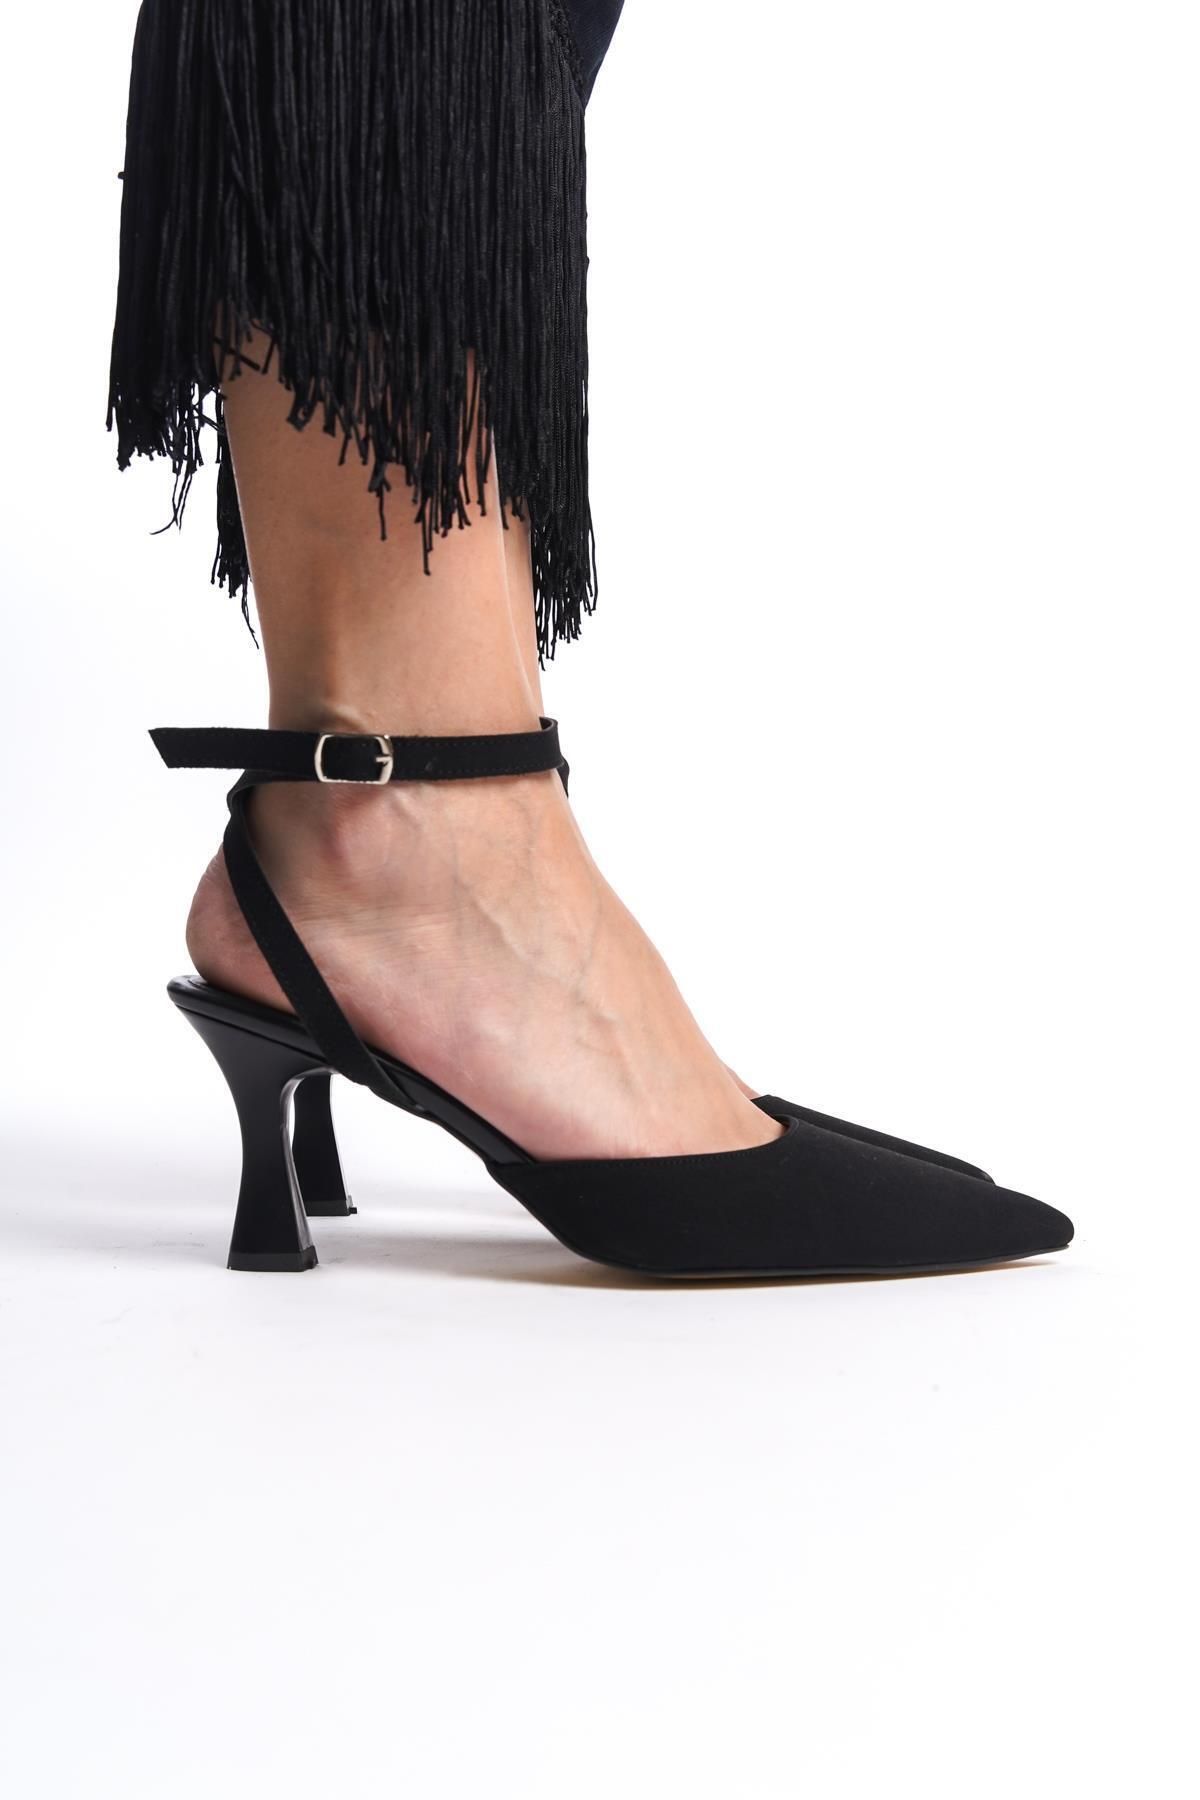 Gökhan Talay Kadın Arkası Bantlı Bilekten Bağlamalı Topuklu Ayakkabı Siyah Süet Mat Amy